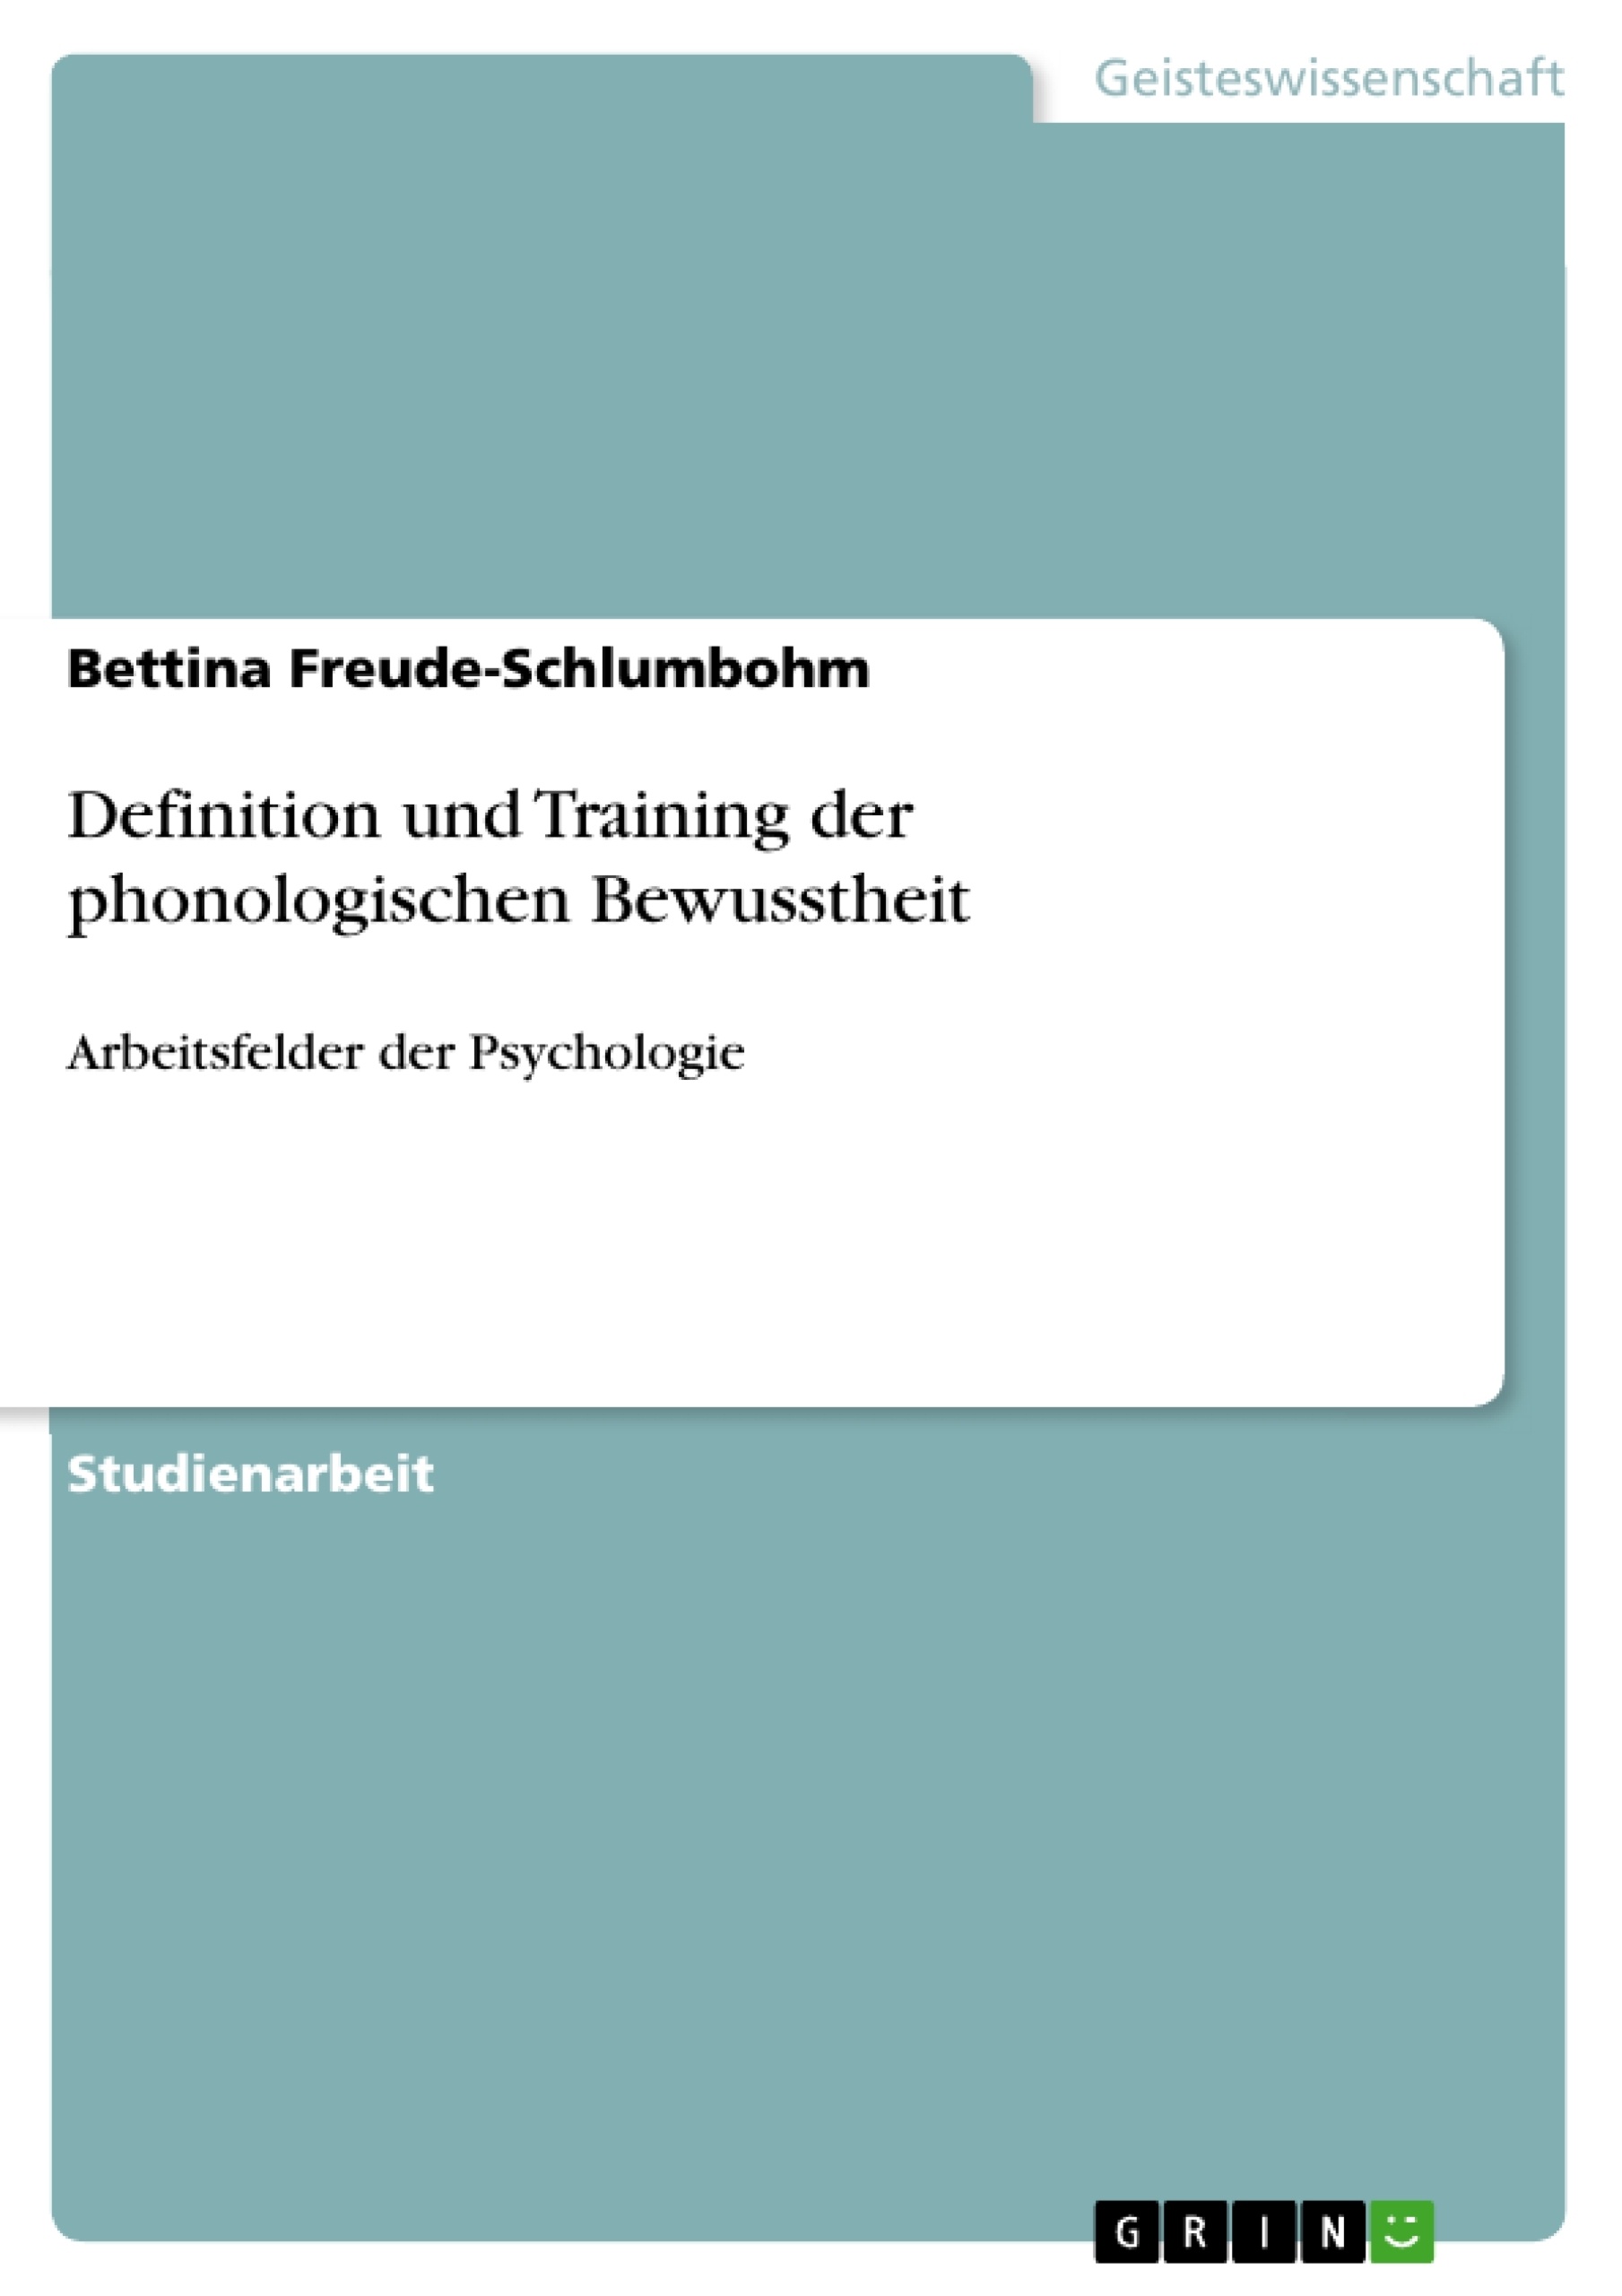 Title: Definition und Training der phonologischen Bewusstheit